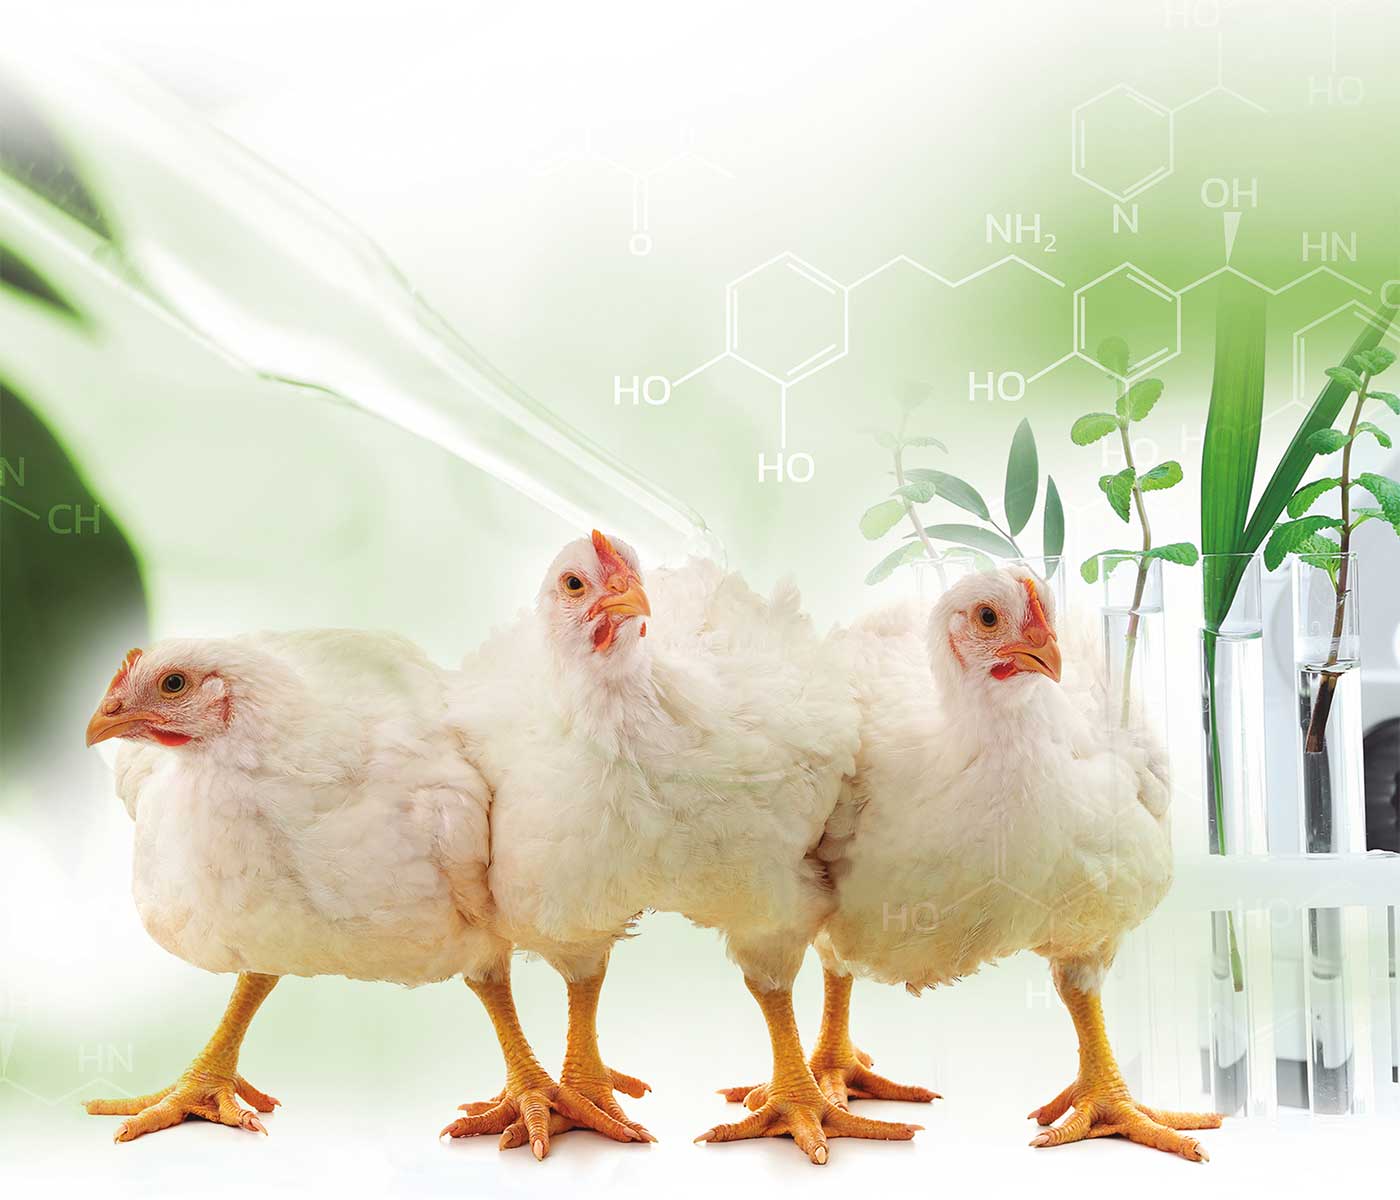 Salud Intestinal, la clave para el bienestar avícola